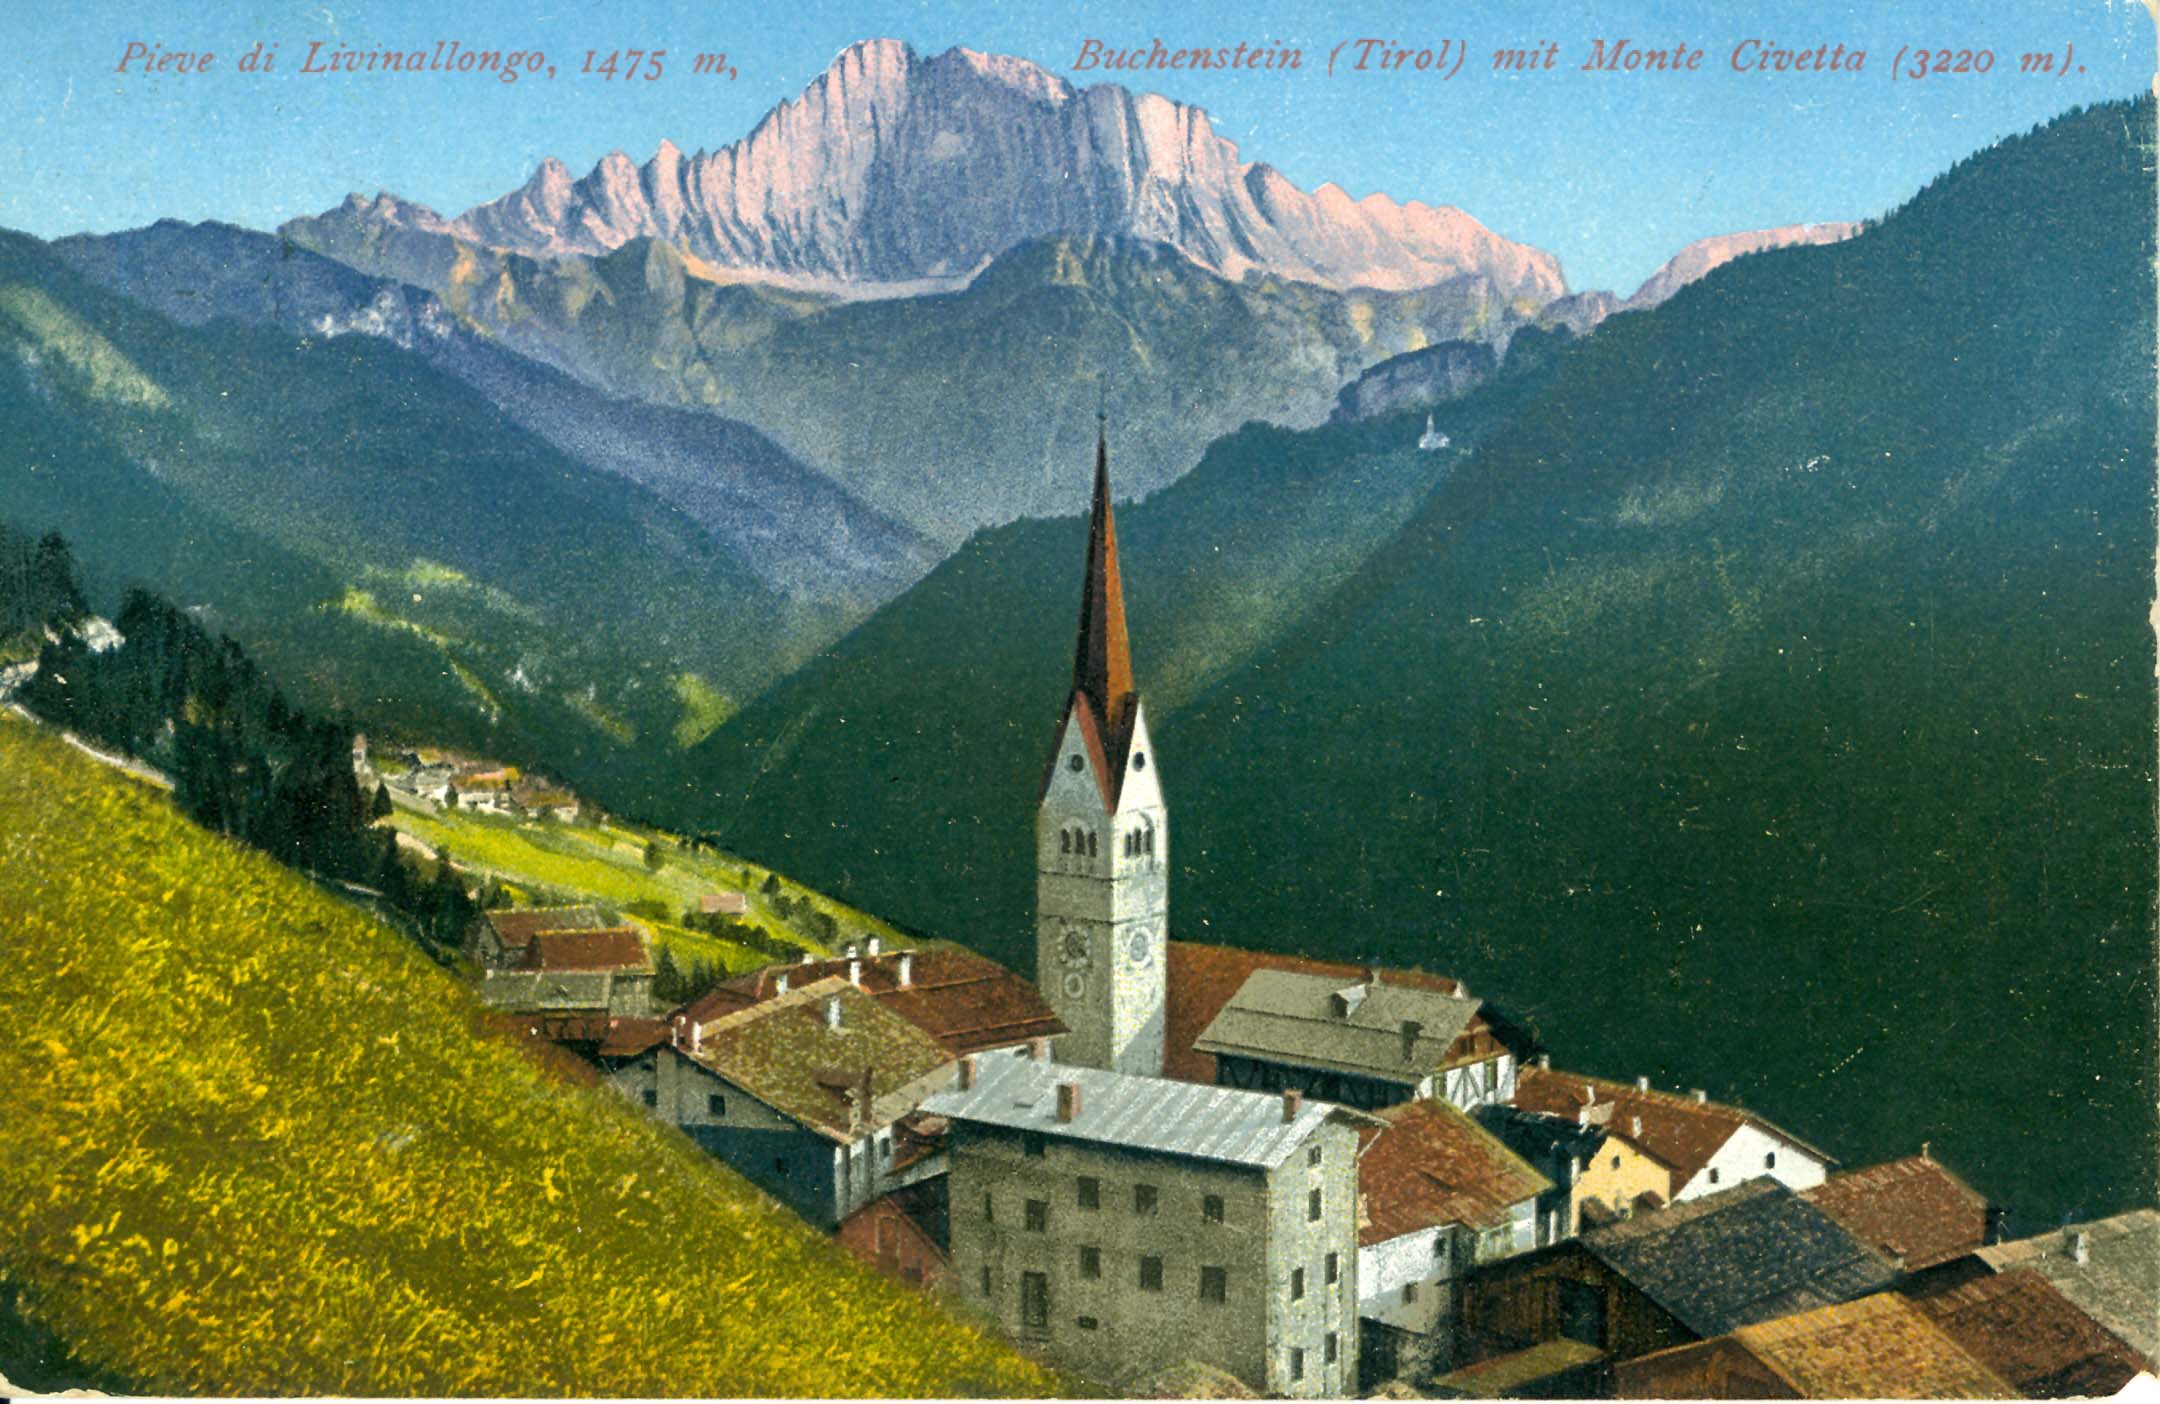 Diese historische Postkarte zeigt den Hauptort Buchenstein (ladinisch: „La Plie‘ da Fodom).